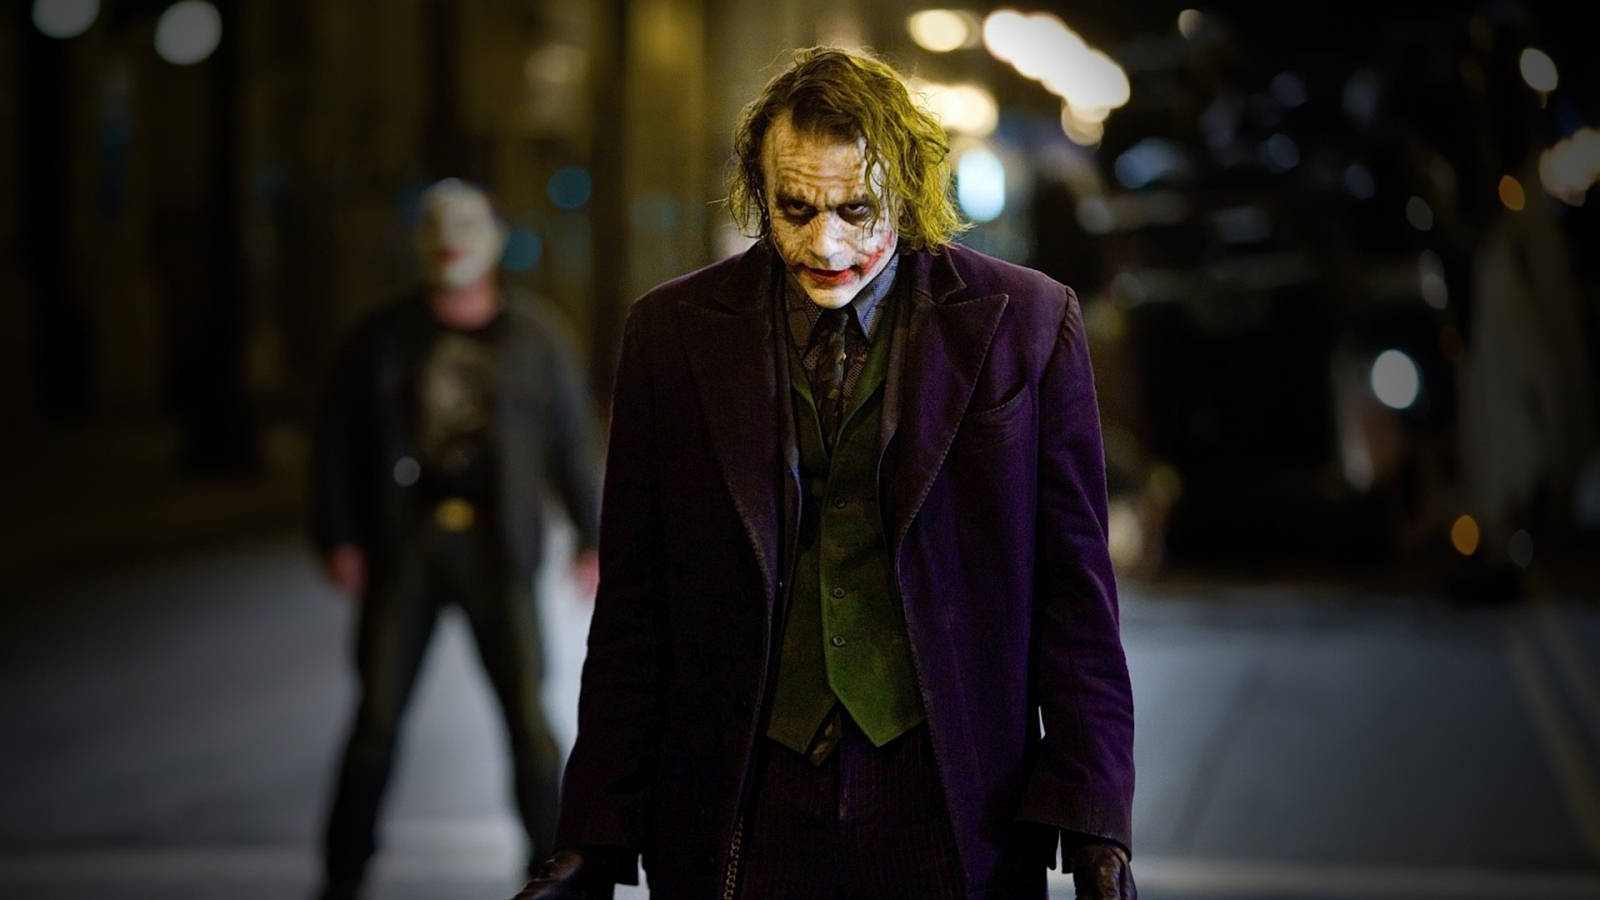 The Joker for 1600 x 900 HDTV resolution